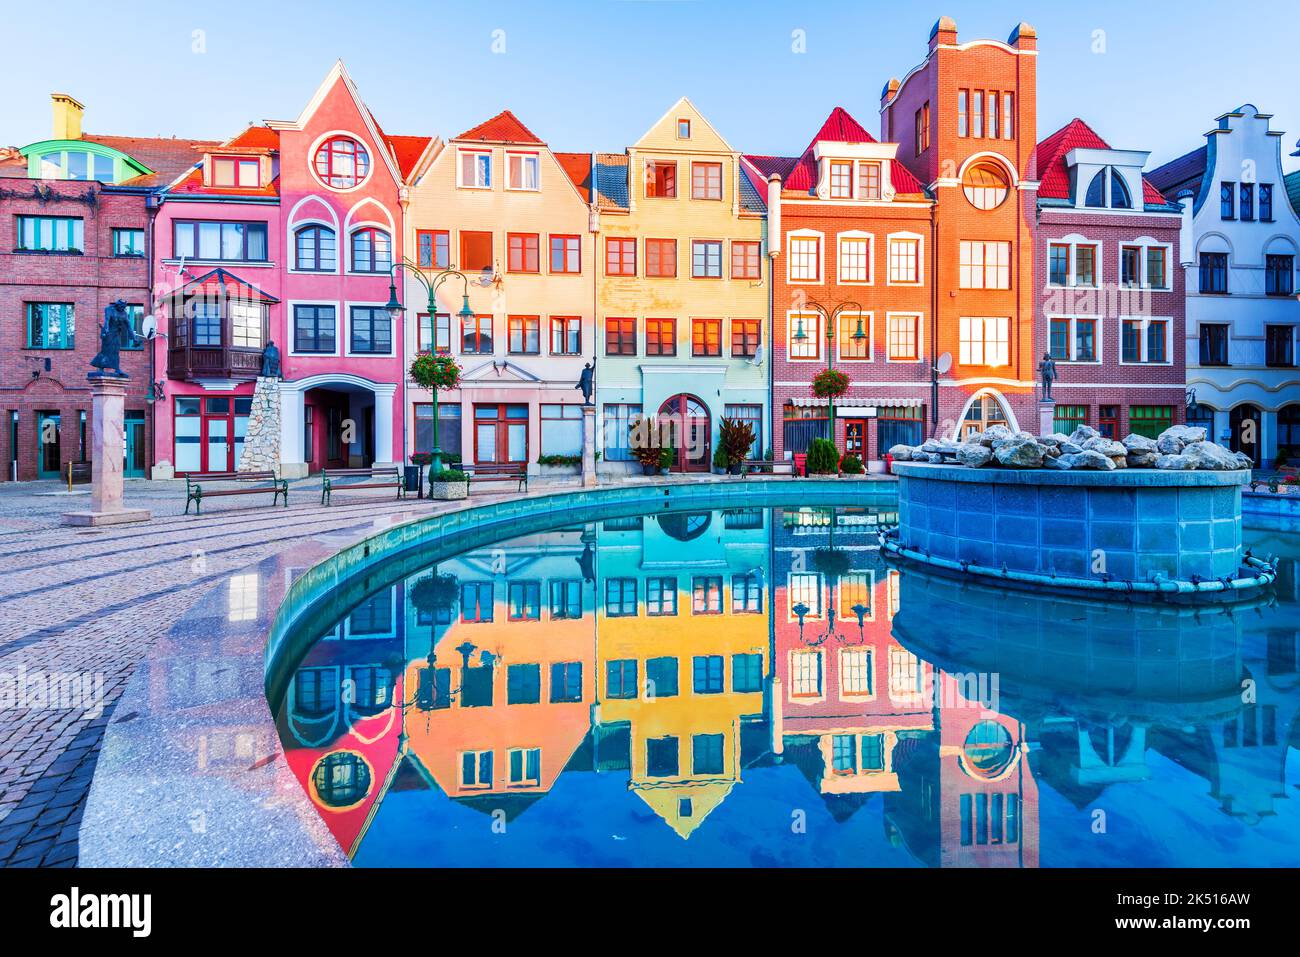 Komarno, Slovacchia. Cortile di Piazza d'Europa con riflessione d'acqua, architettura storica tipica di particolari parti d'Europa. Foto Stock